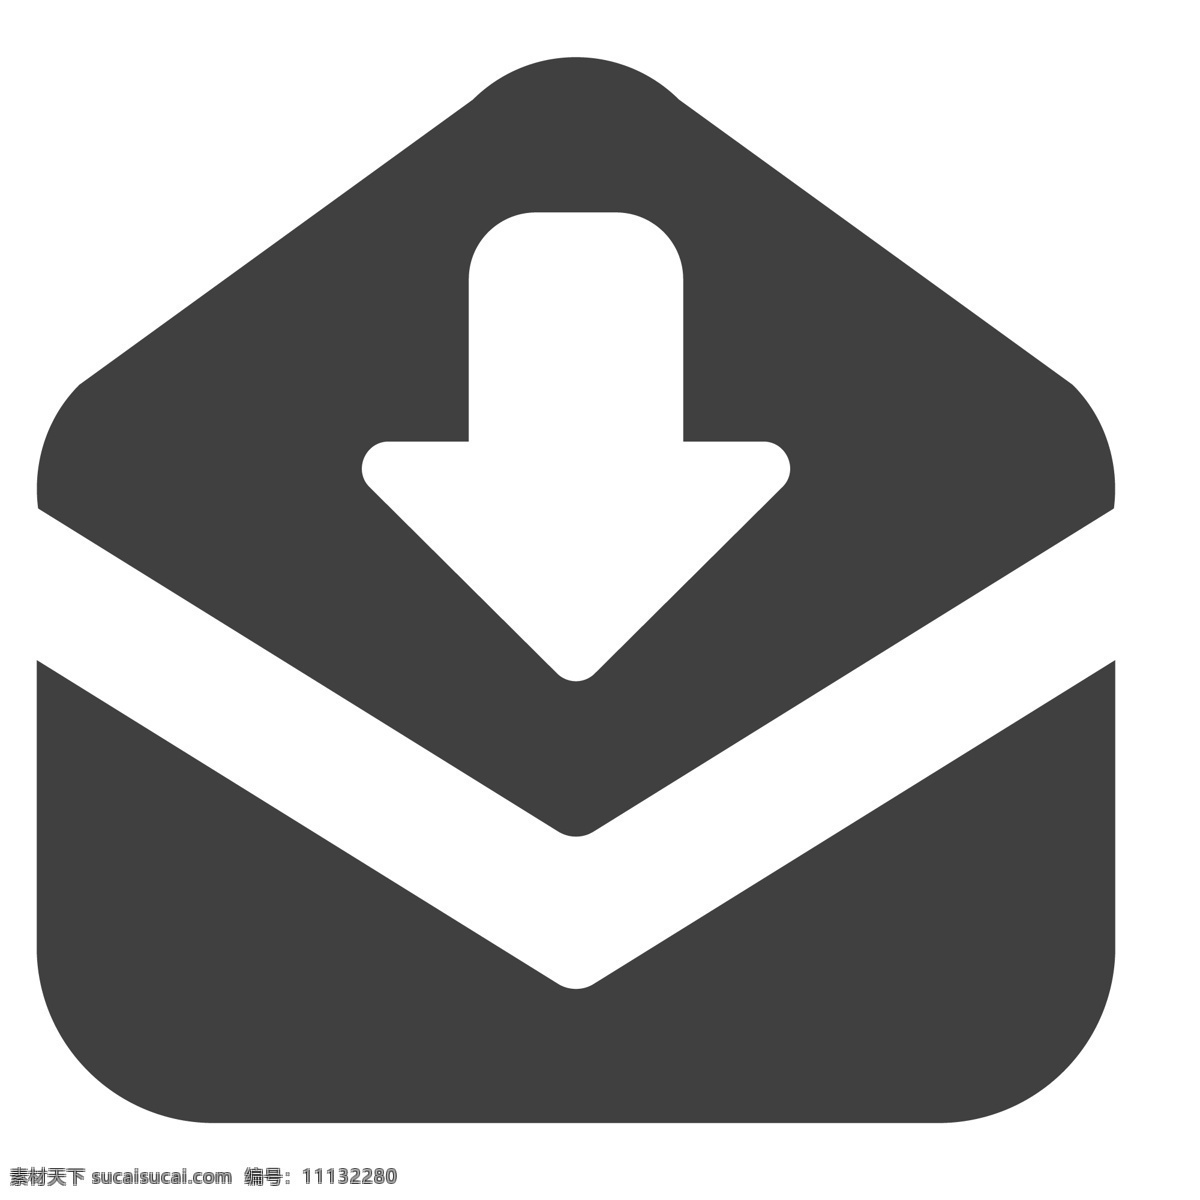 邮件下载图标 箭头 邮件 卡通 生活图标 卡通图标 黑色的图标 手机图标 智能图标设计